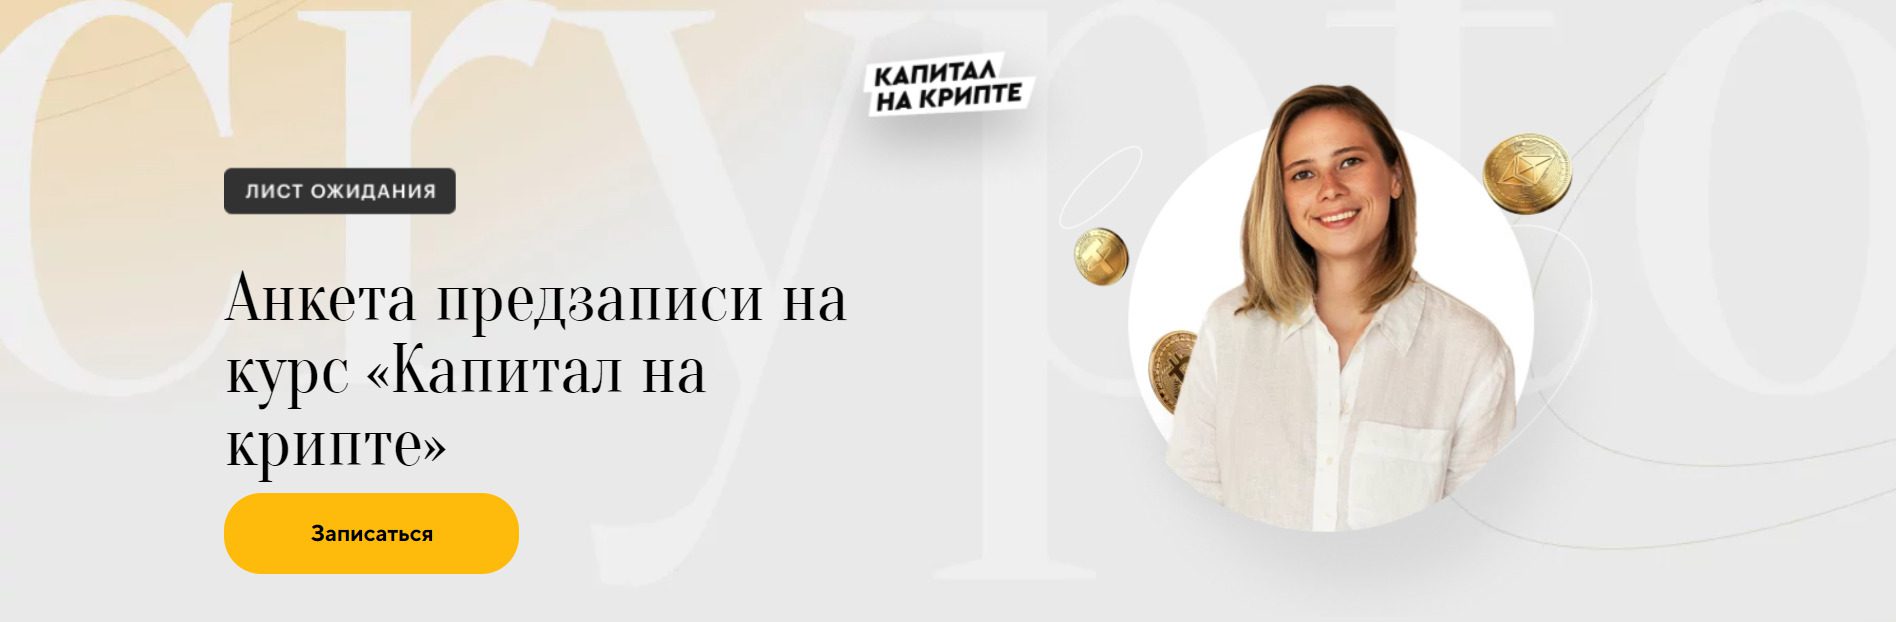 Валерия Винокурова Капитал на Крипте